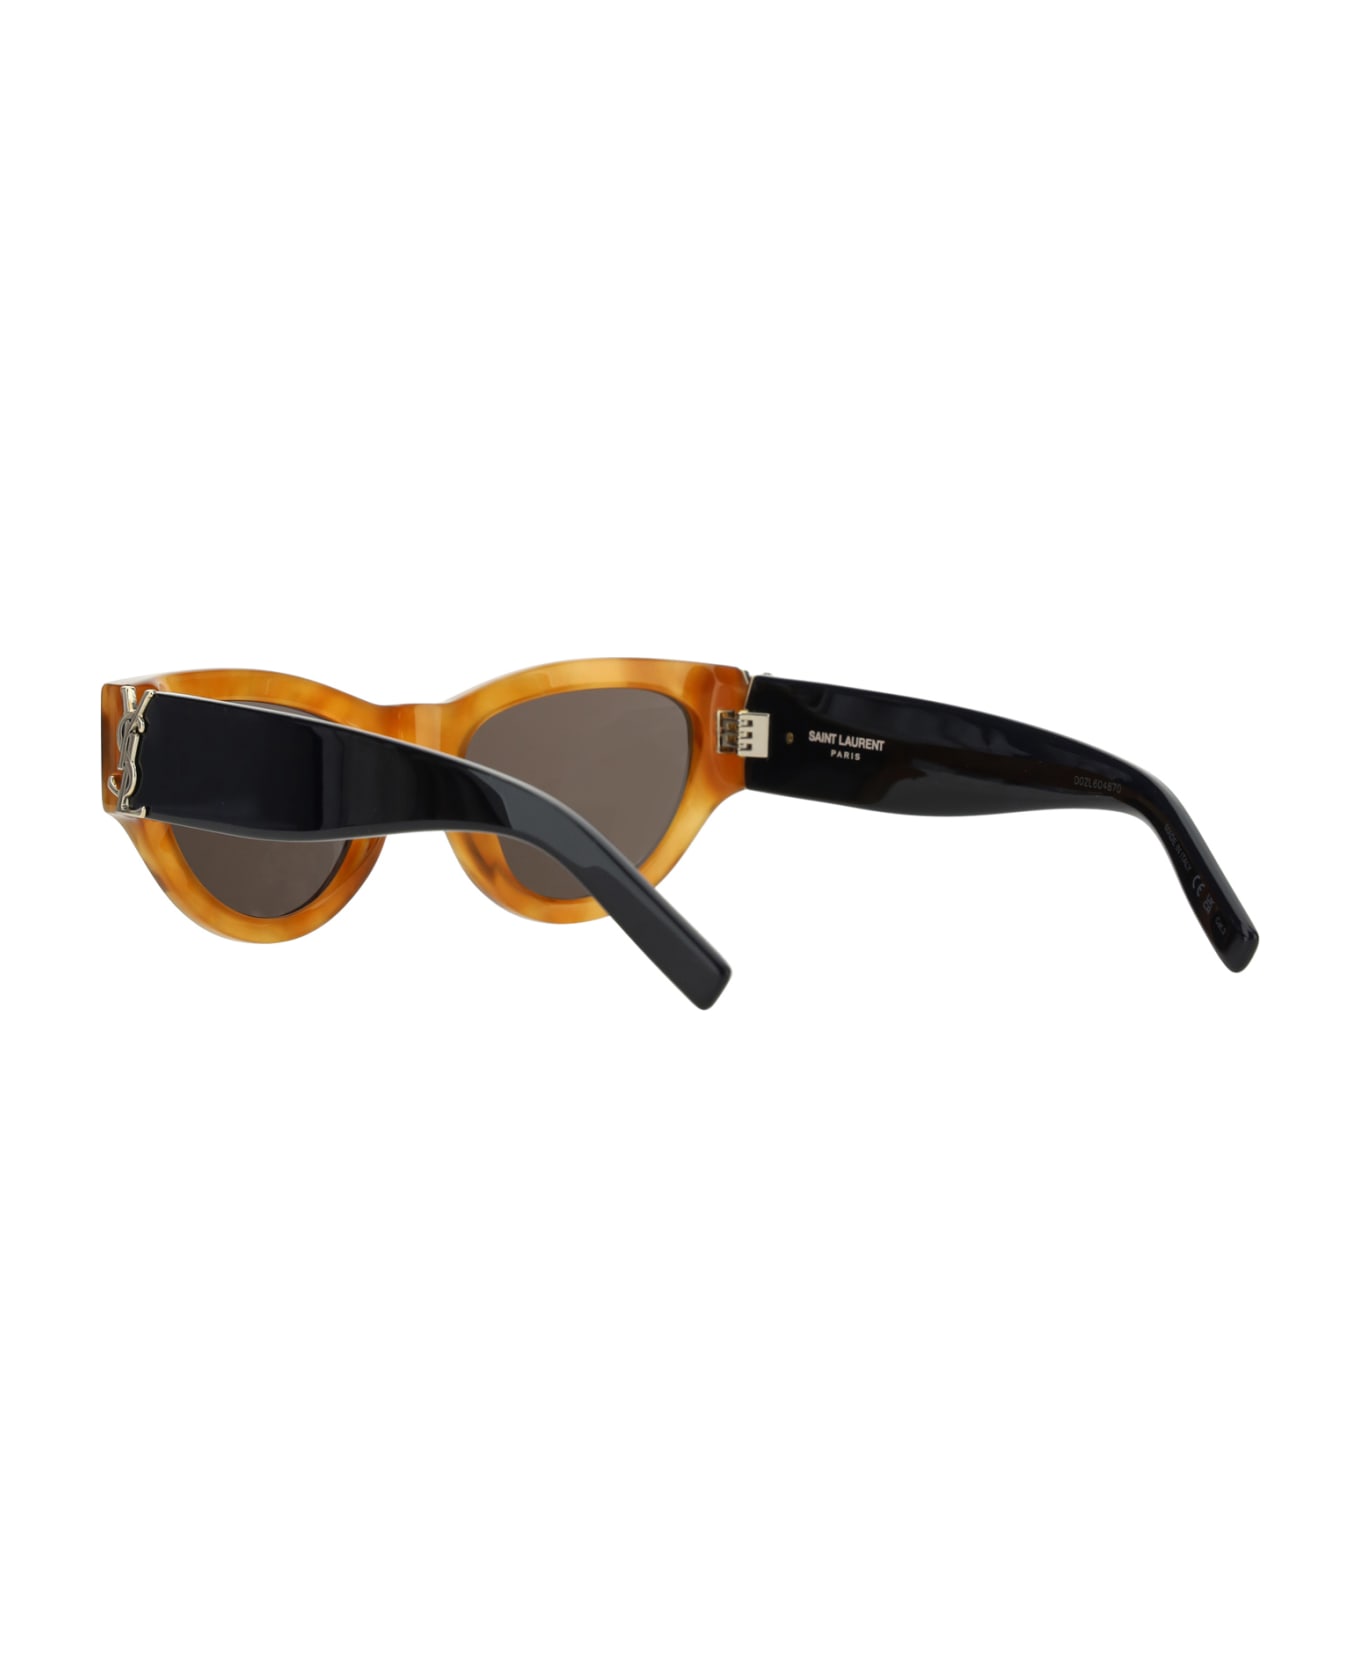 Saint Laurent M94 Sunglasses - Havana Black Black サングラス